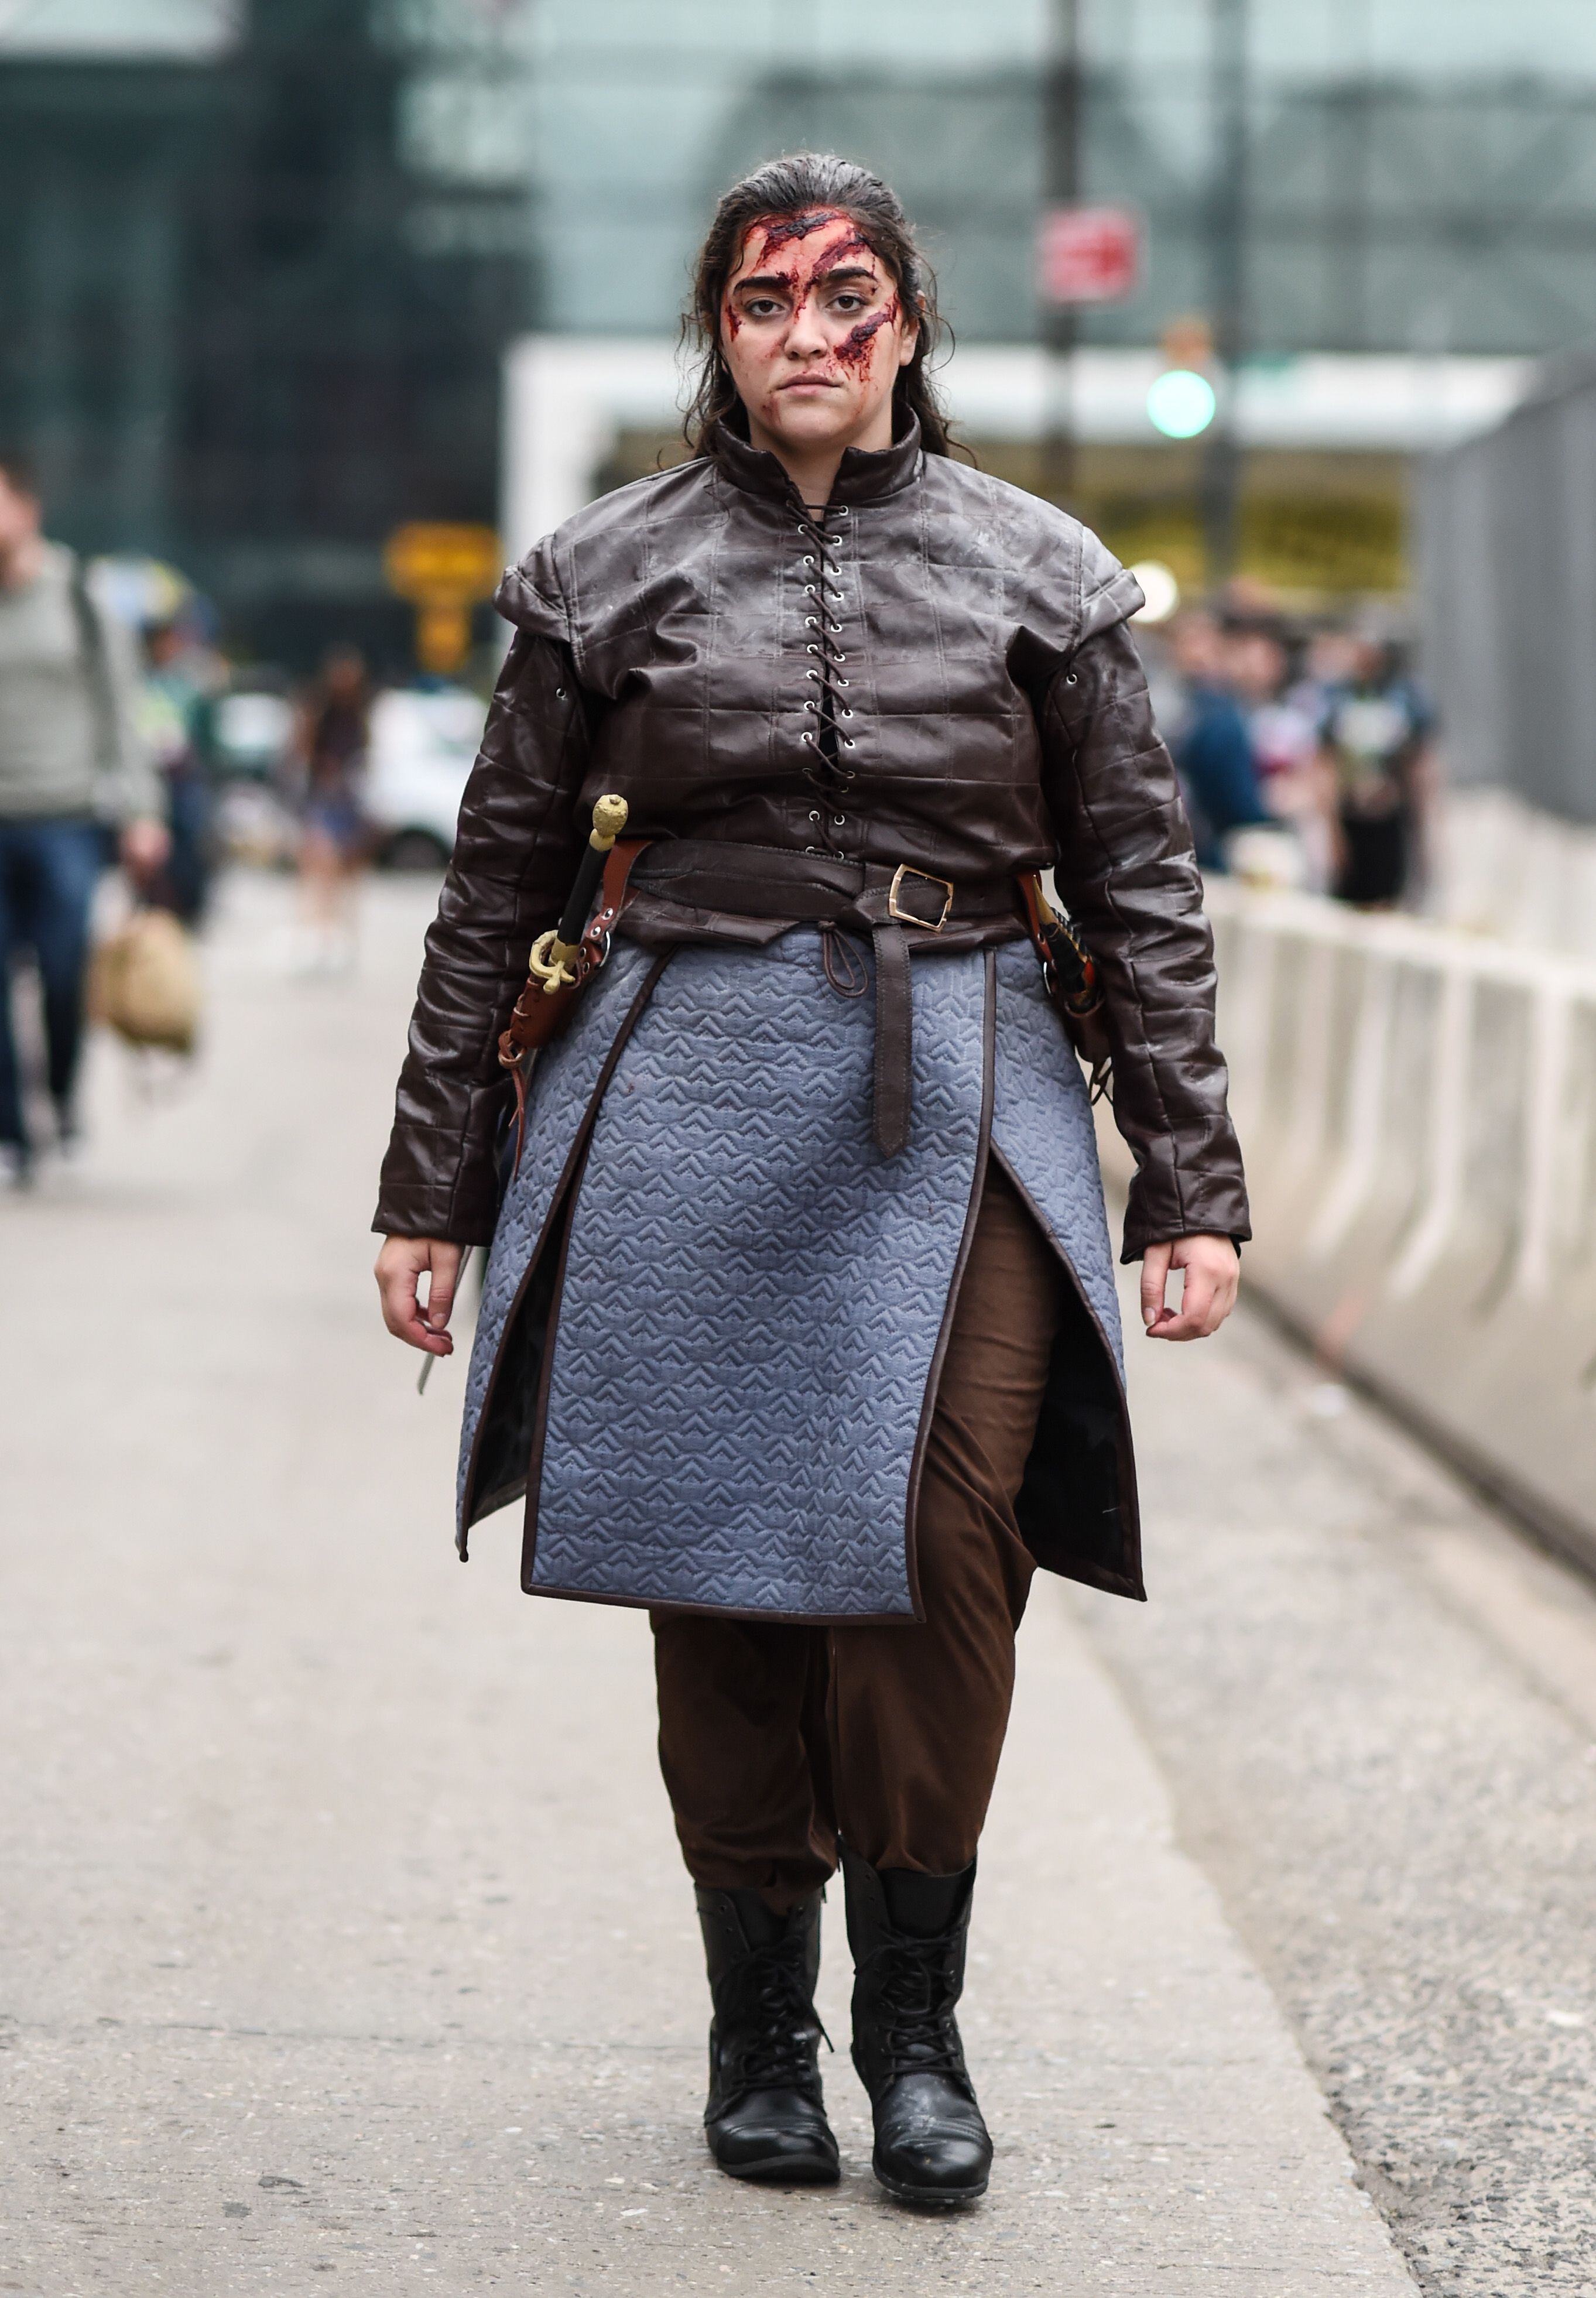 23 Best DIY 'Game of Thrones' Costumes: Daenerys, Arya & More